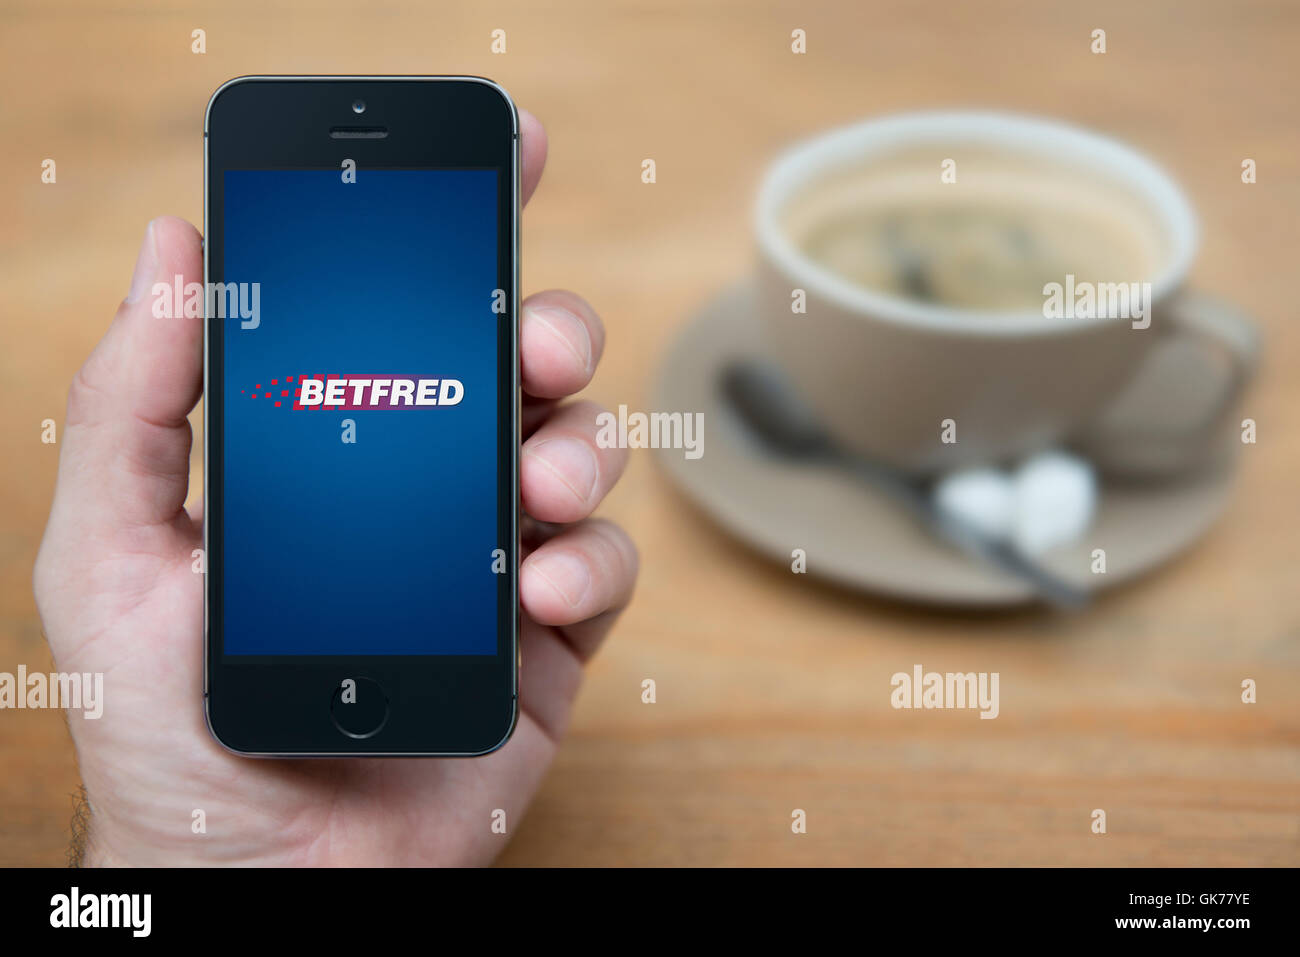 Ein Mann schaut auf seinem iPhone die Betfred-Logo anzeigt, während bei einer Tasse Kaffee (nur zur redaktionellen Verwendung) saß. Stockfoto